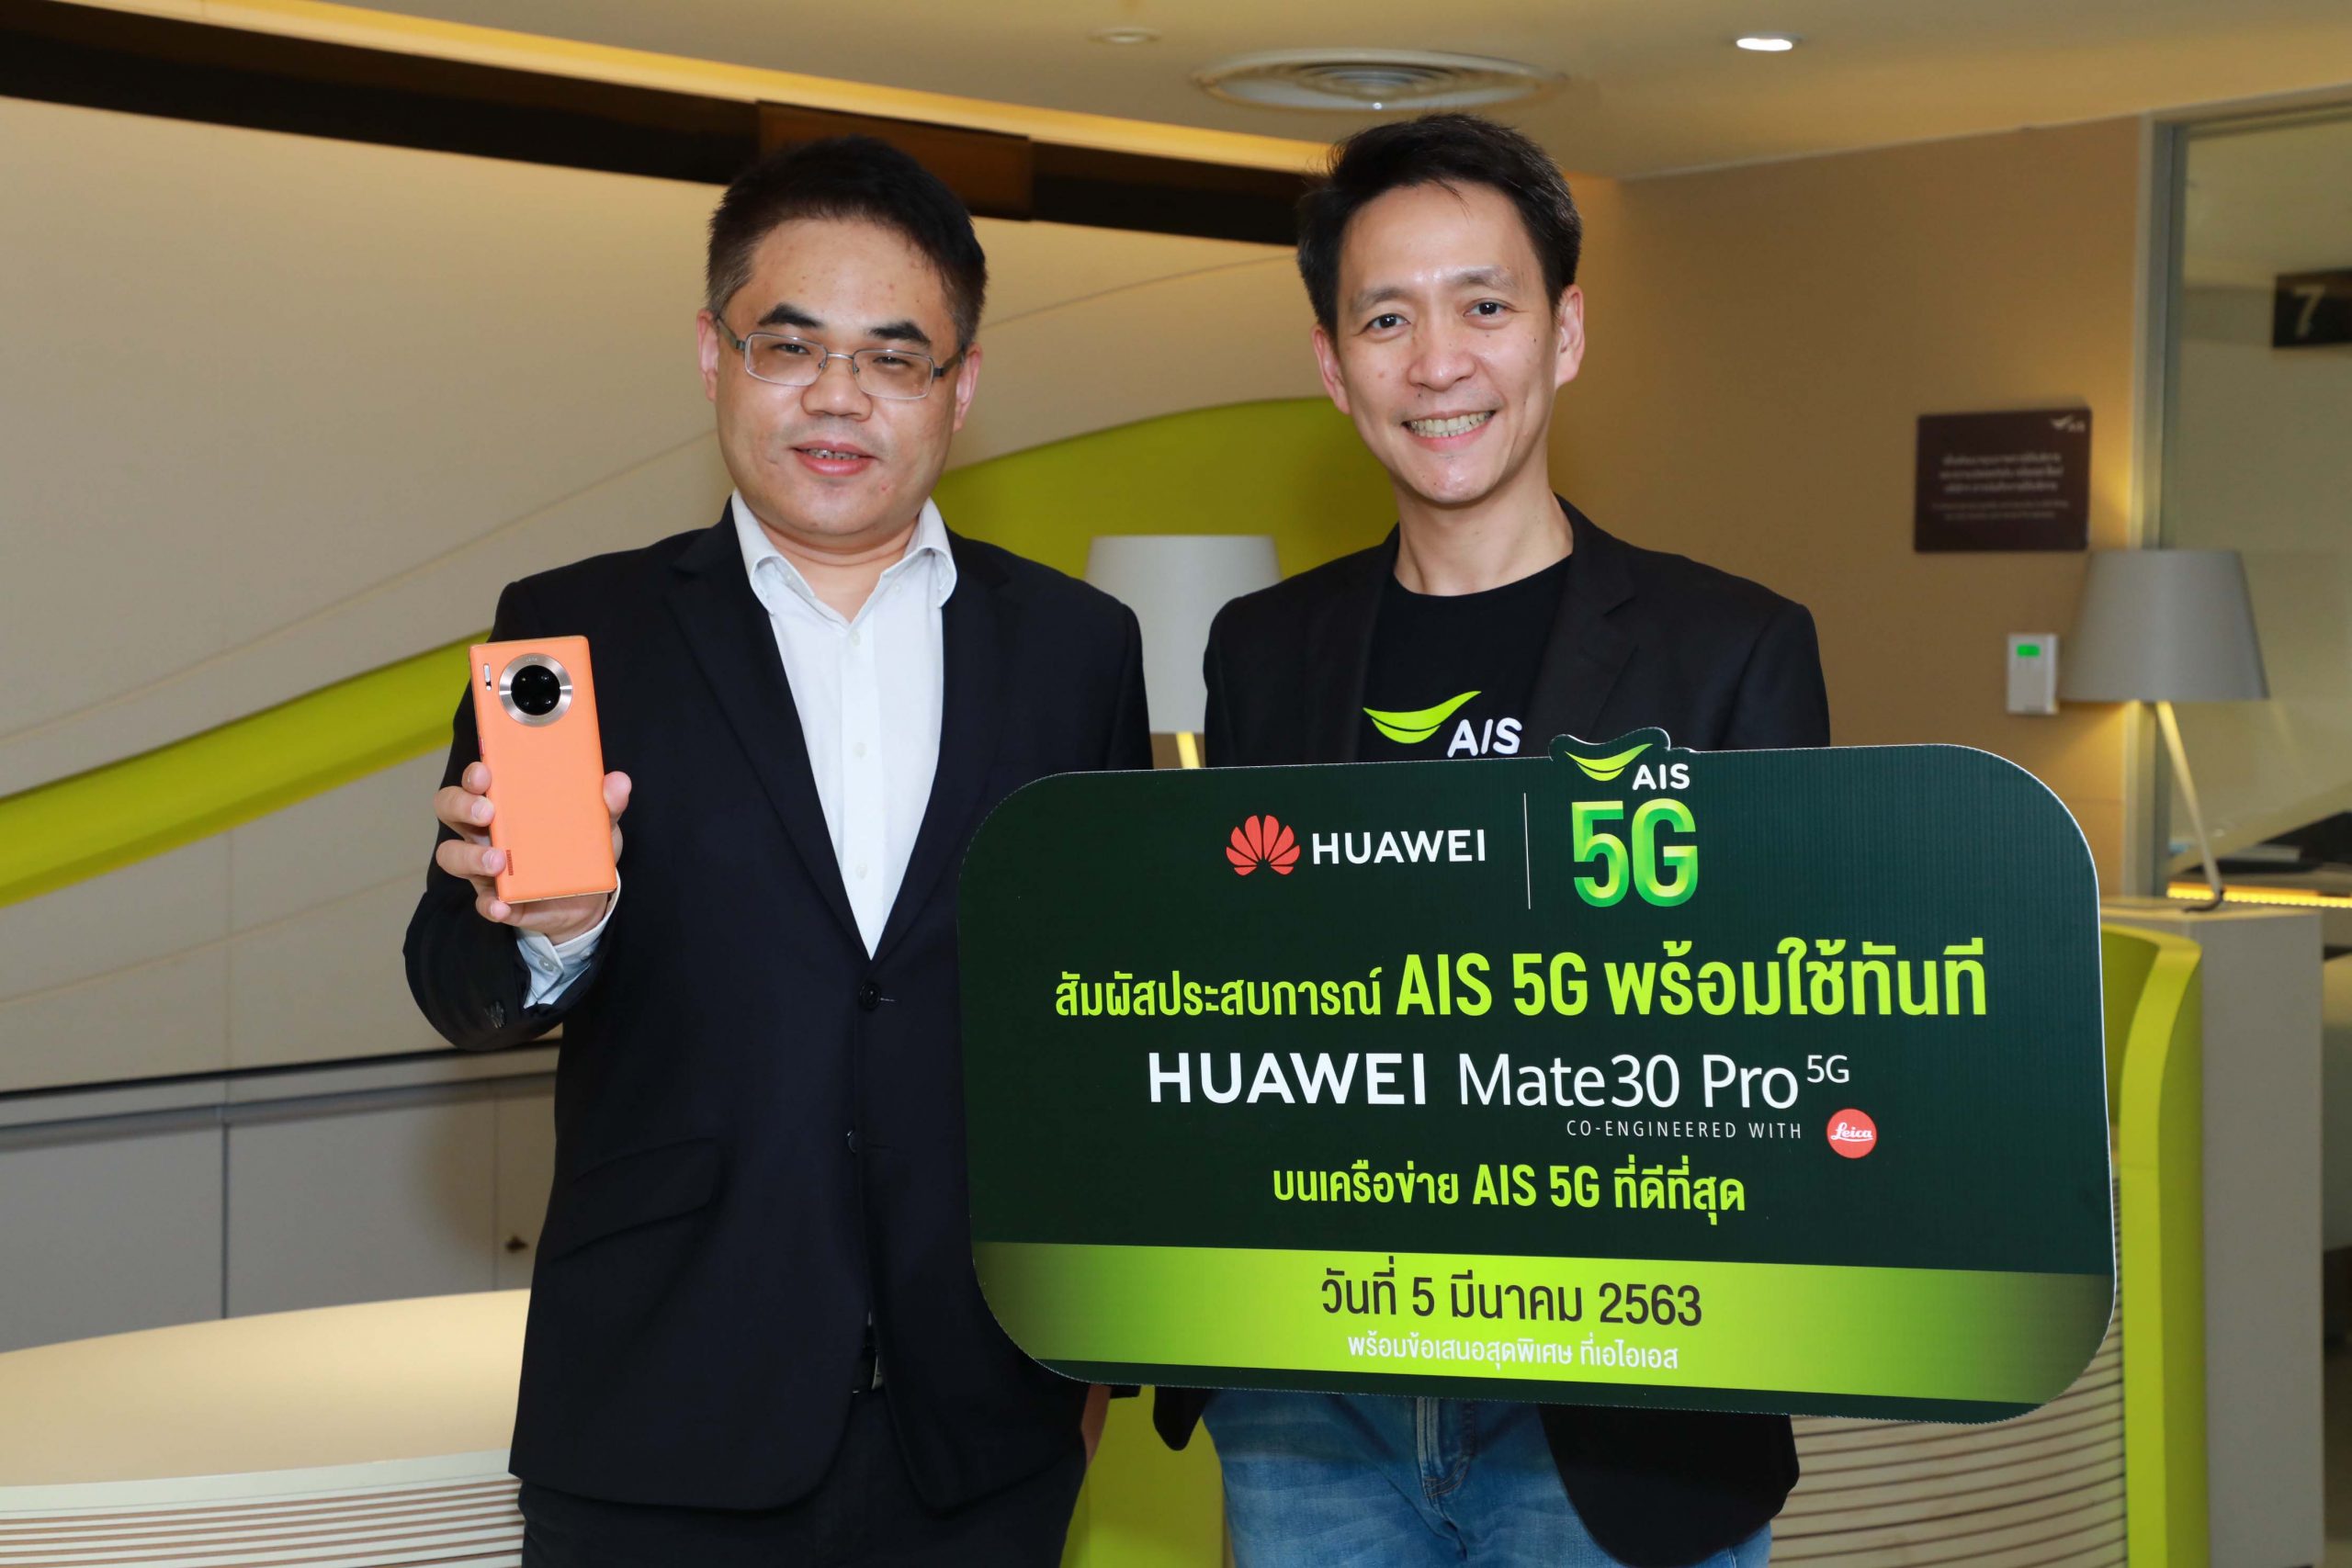 ภาพข่าว: AIS ให้คนไทยสัมผัสประสบการณ์ 5G แบบพร้อมใช้ทันที! วันที่ 5 มีนาคม นี้บนสมาร์ทโฟนสุดล้ำ Huawei Mate 30 Pro 5G